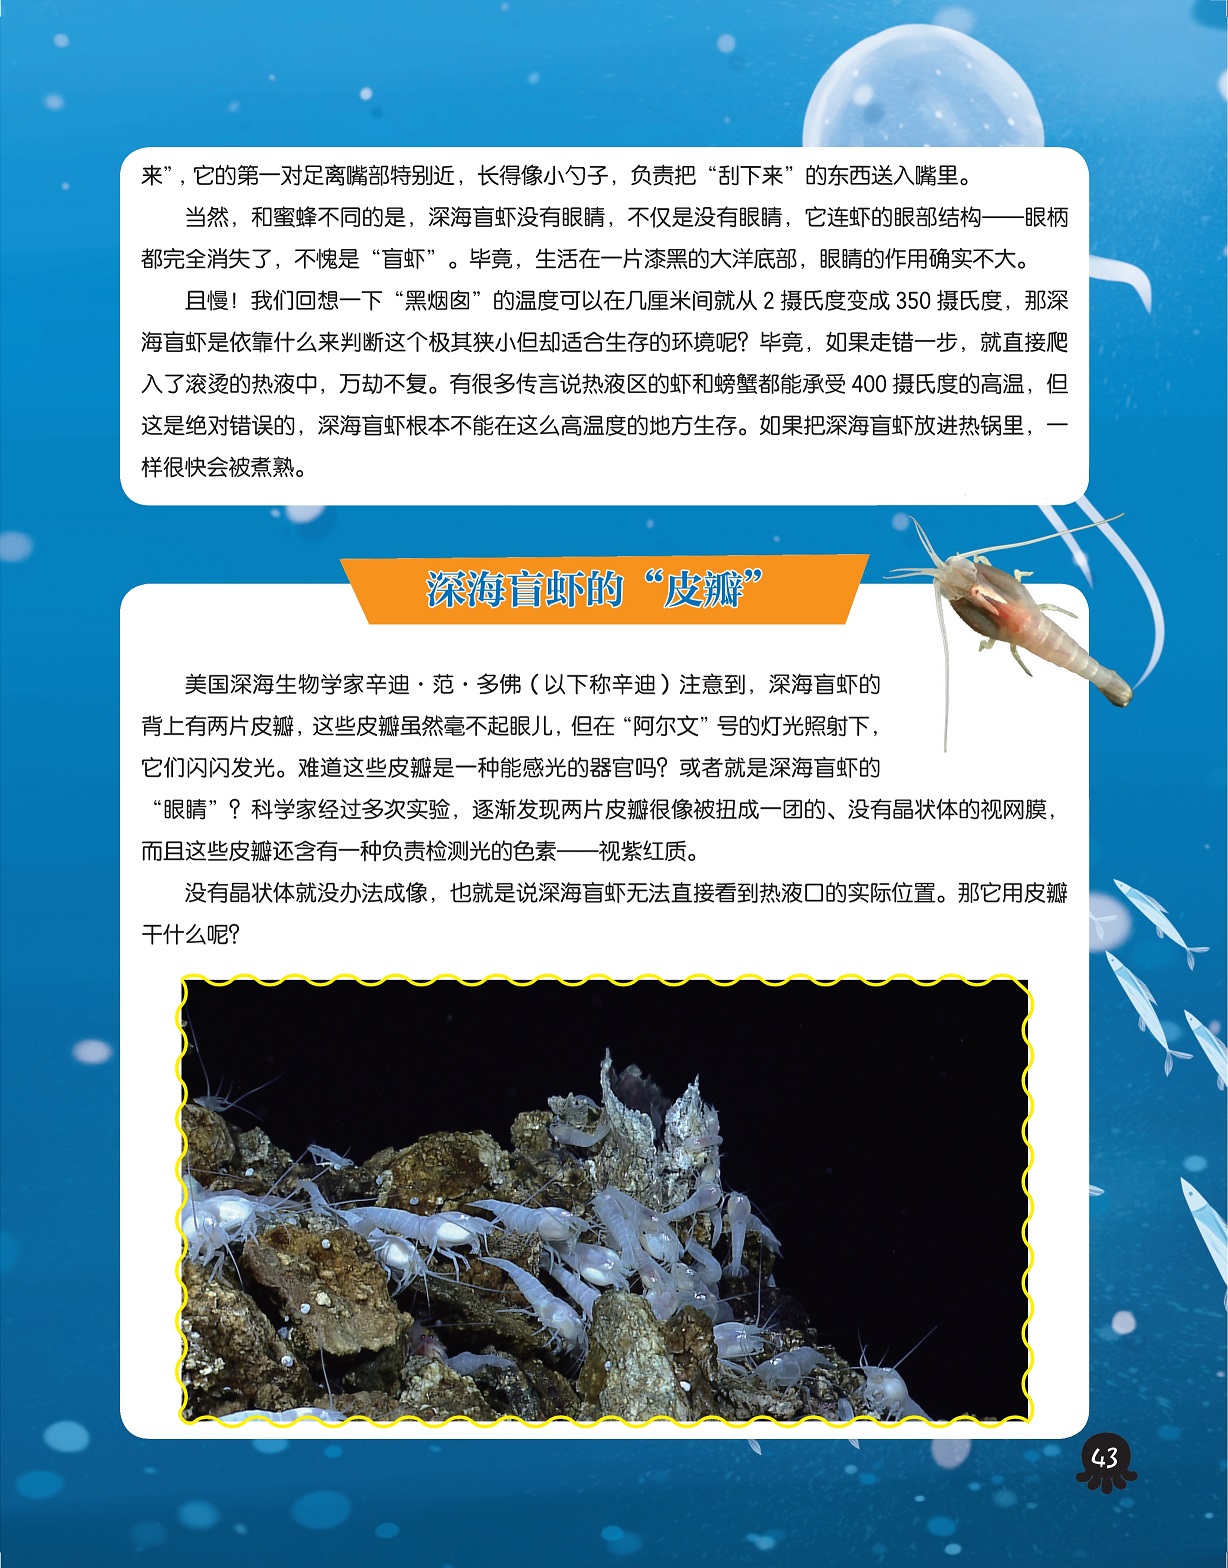 深海盲虾没有眼睛,深海盲虾的“皮瓣”